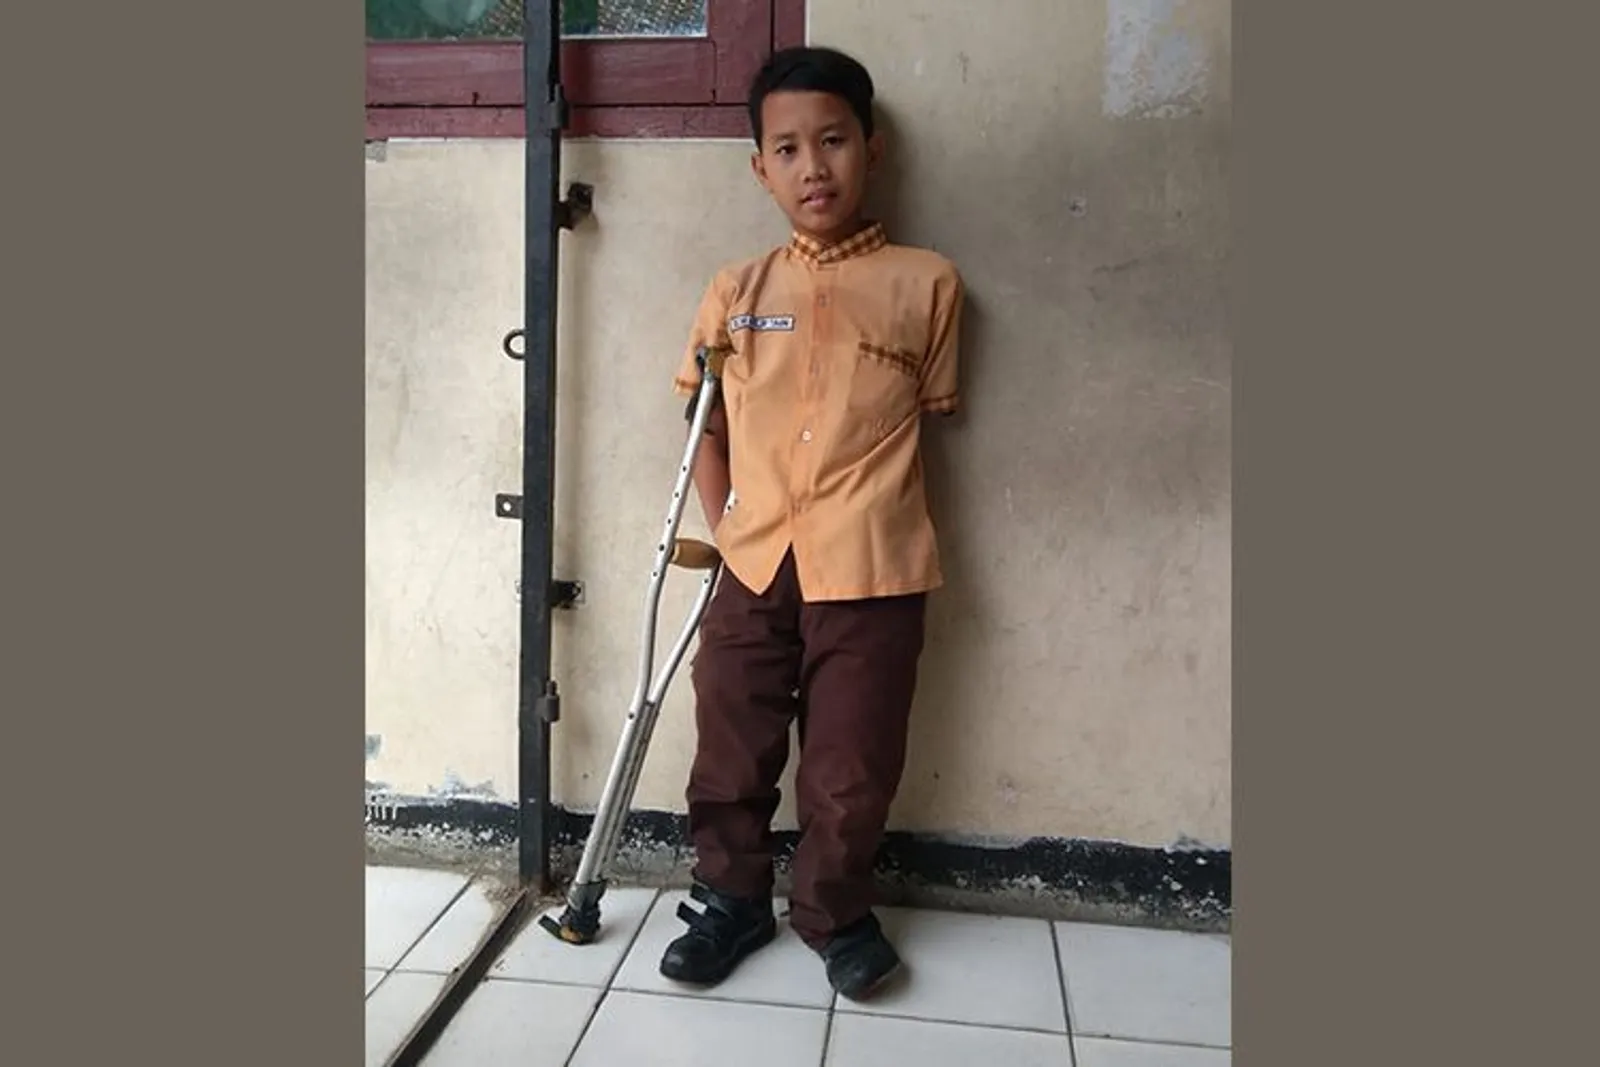 Perusahaan Produk Alat Tulis Ini Membantu Anak Disabilitas Indonesia